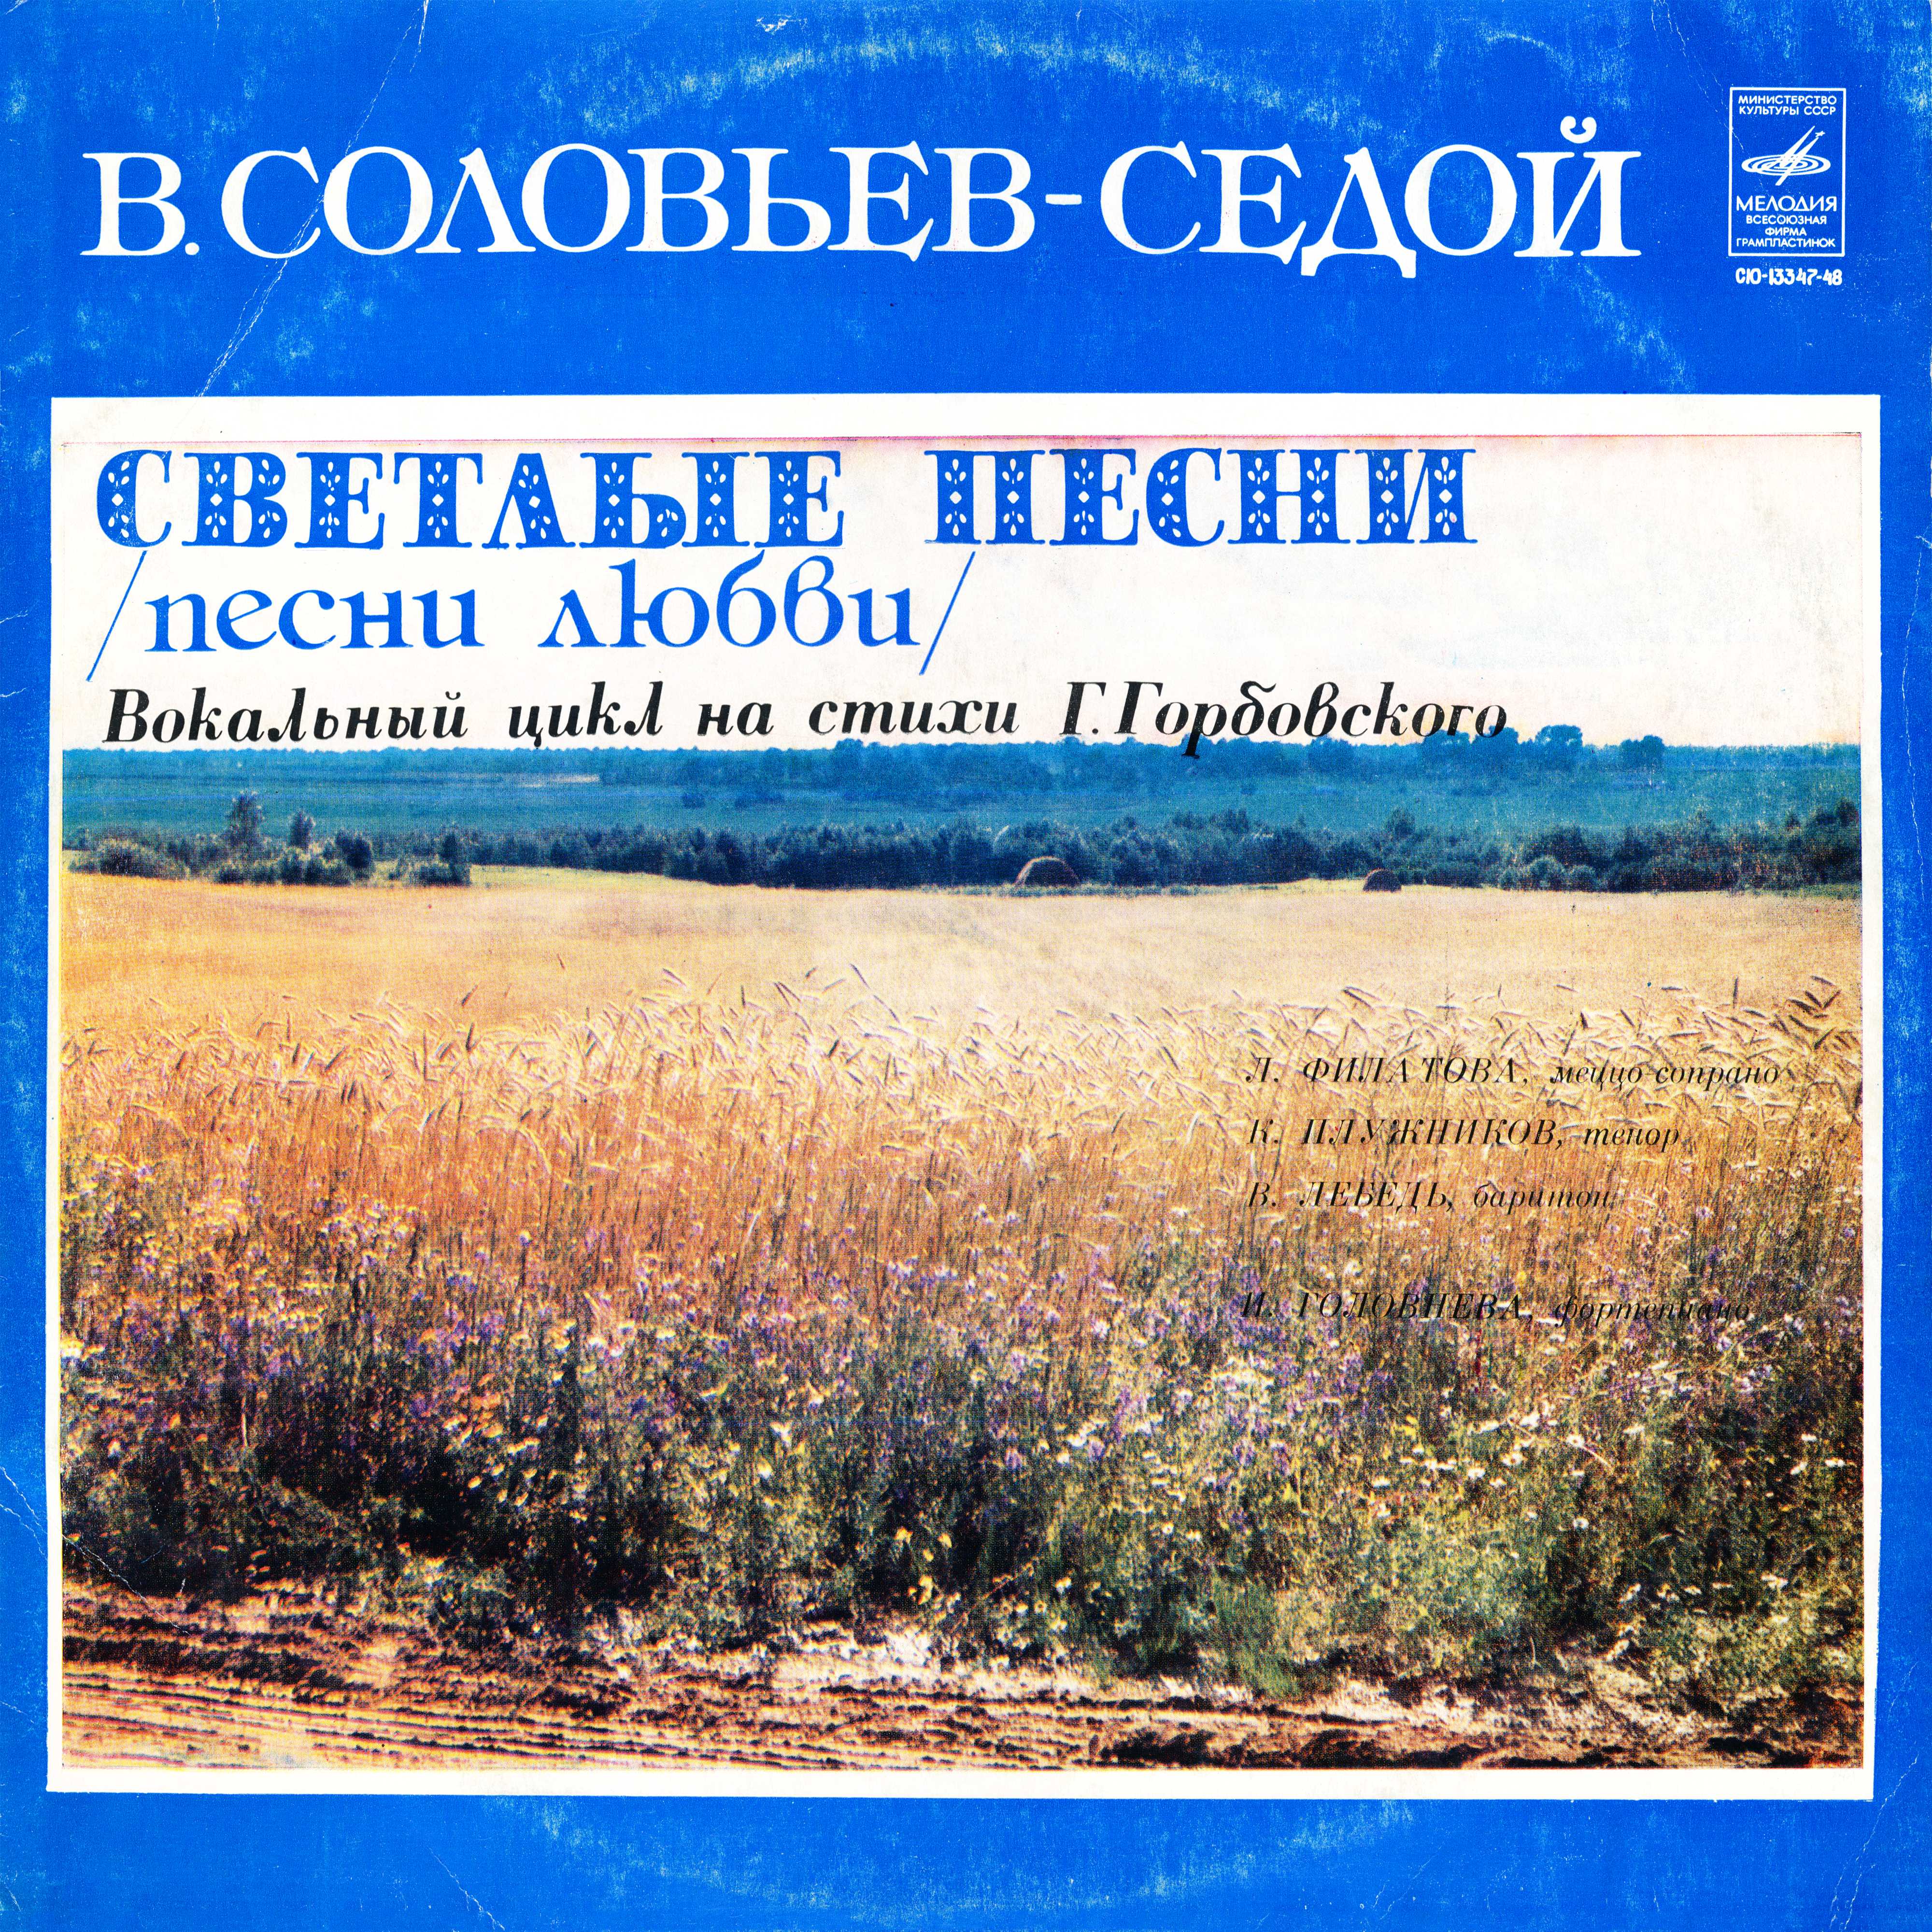 B.СОЛОВЬЕВ-СЕДОЙ (1907—1979): «Светлые песни (песни любви)», вокальный цикл на стихи Г. Горбовского: